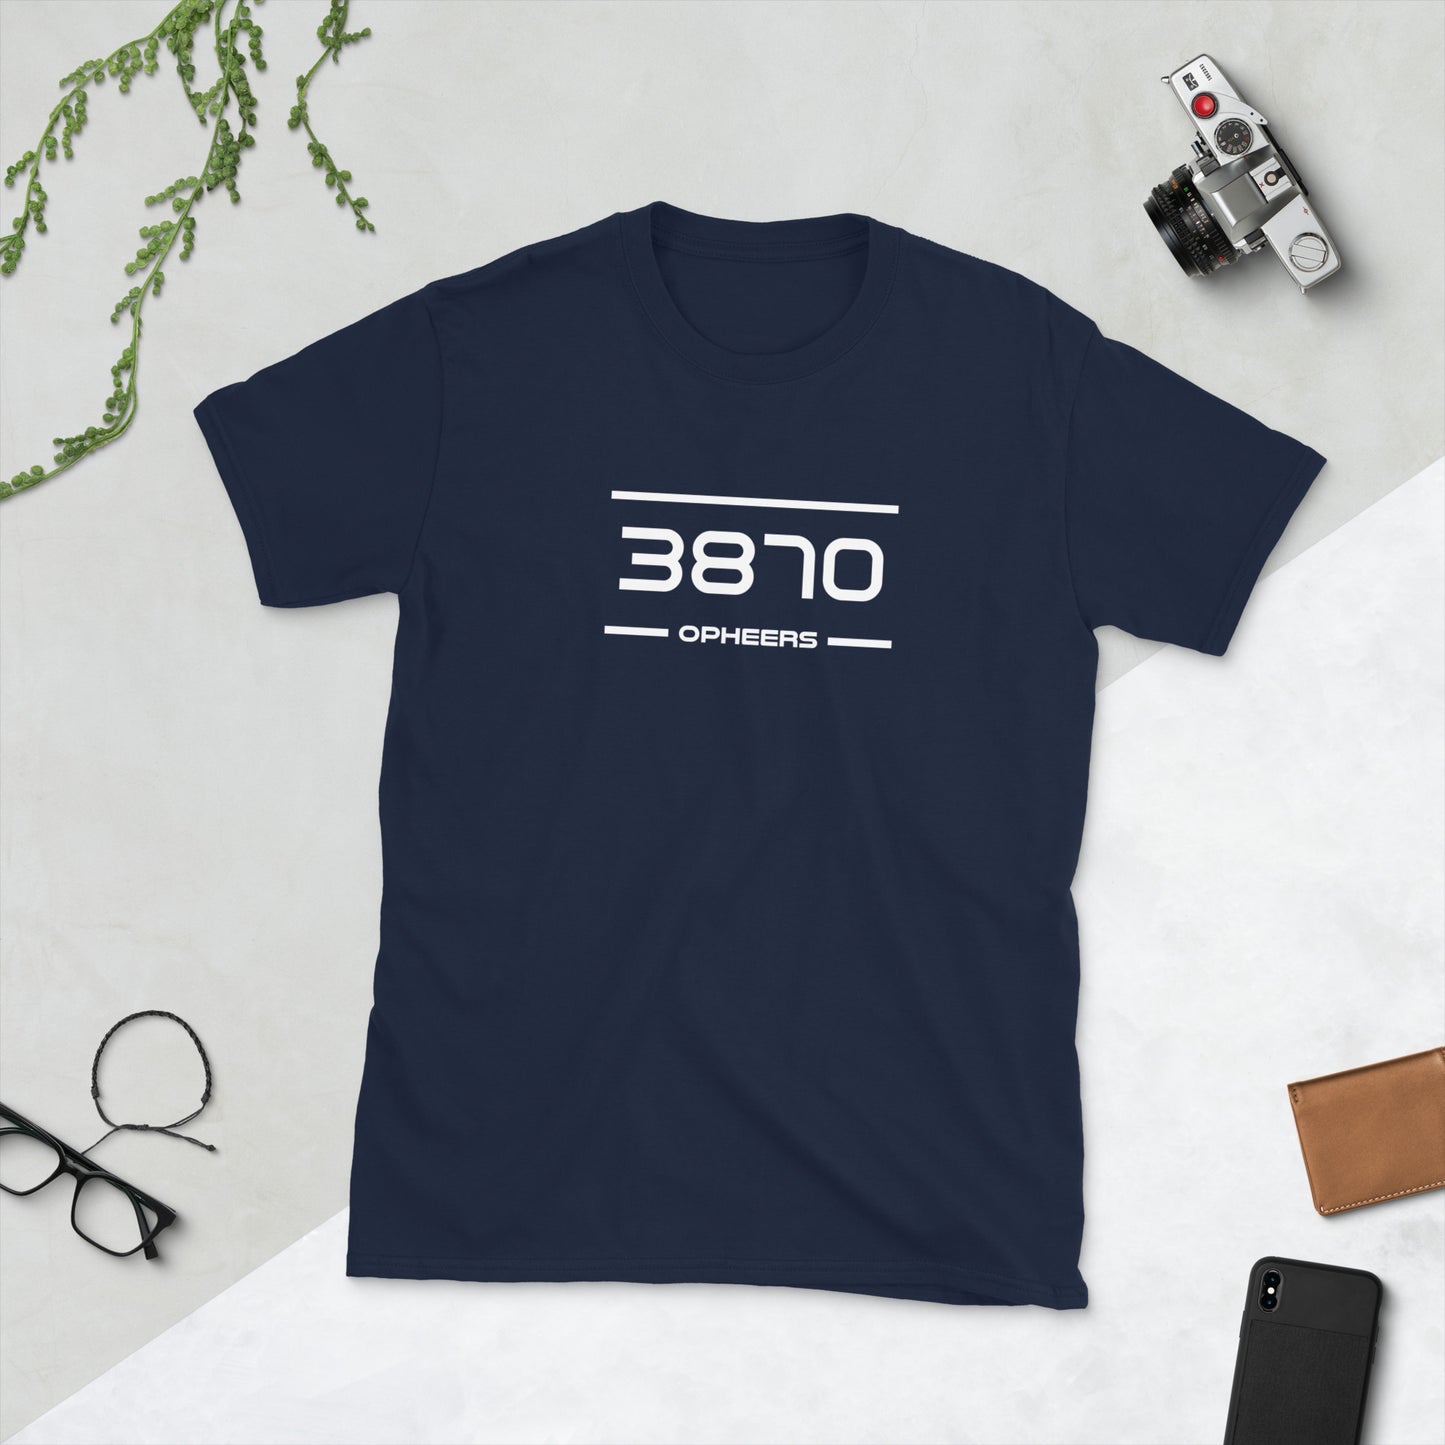 Tshirt - 3870 - Opheers